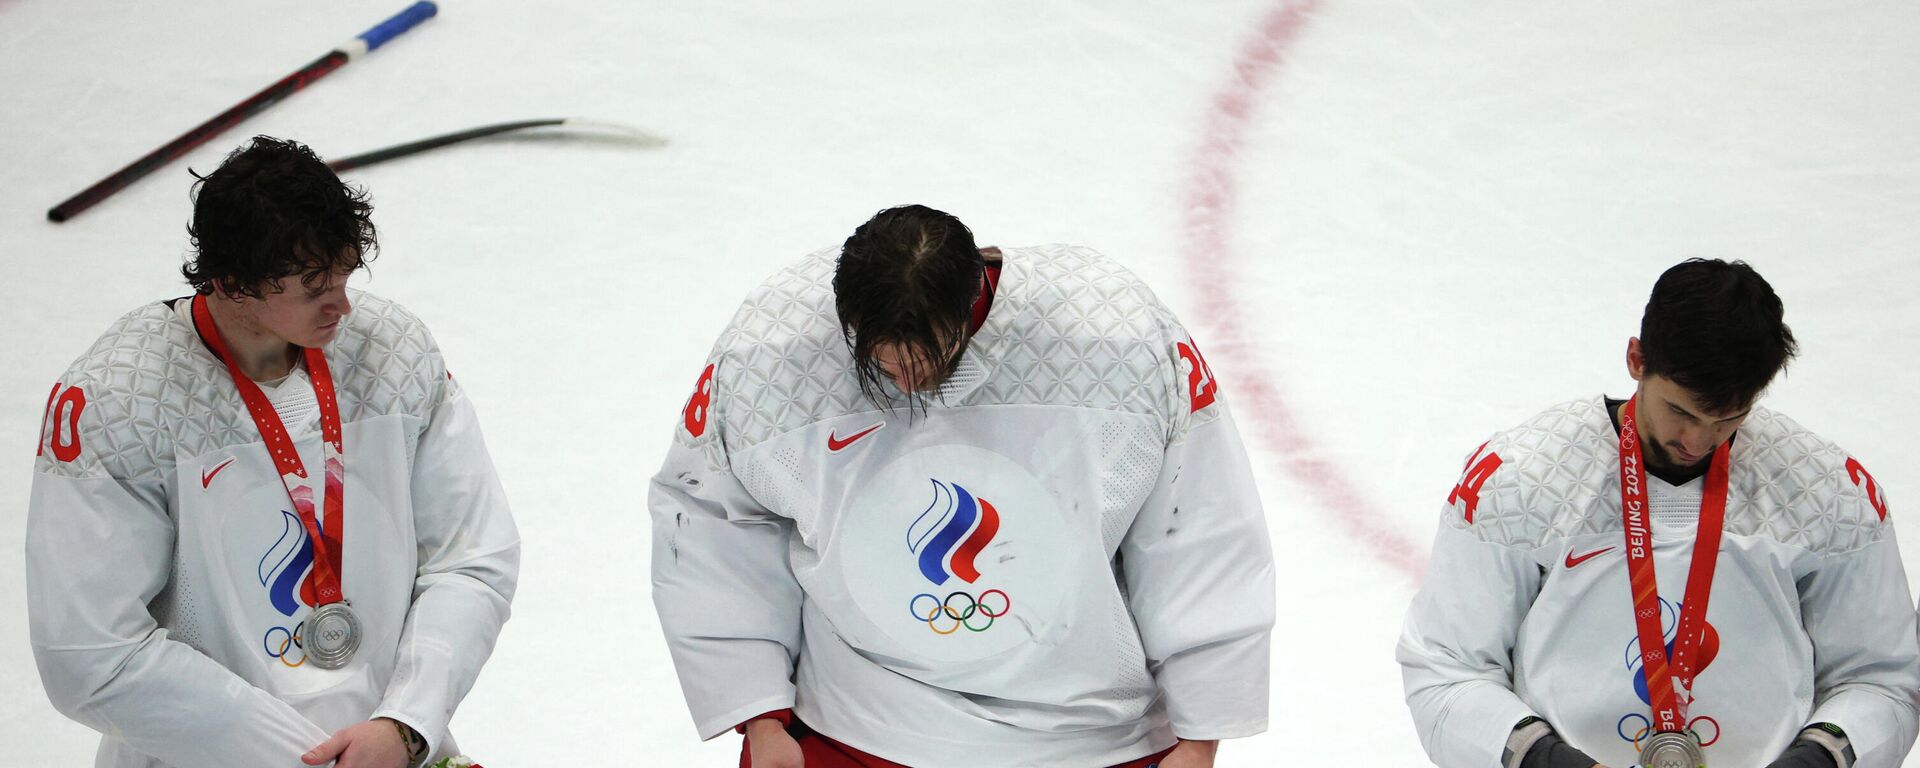 El equipo del Comité Olímpico de Rusia logró la medalla de plata en la final de hockey hielo masculino de los Juegos de Invierno de Pekín 2020 - Sputnik Mundo, 1920, 20.02.2022